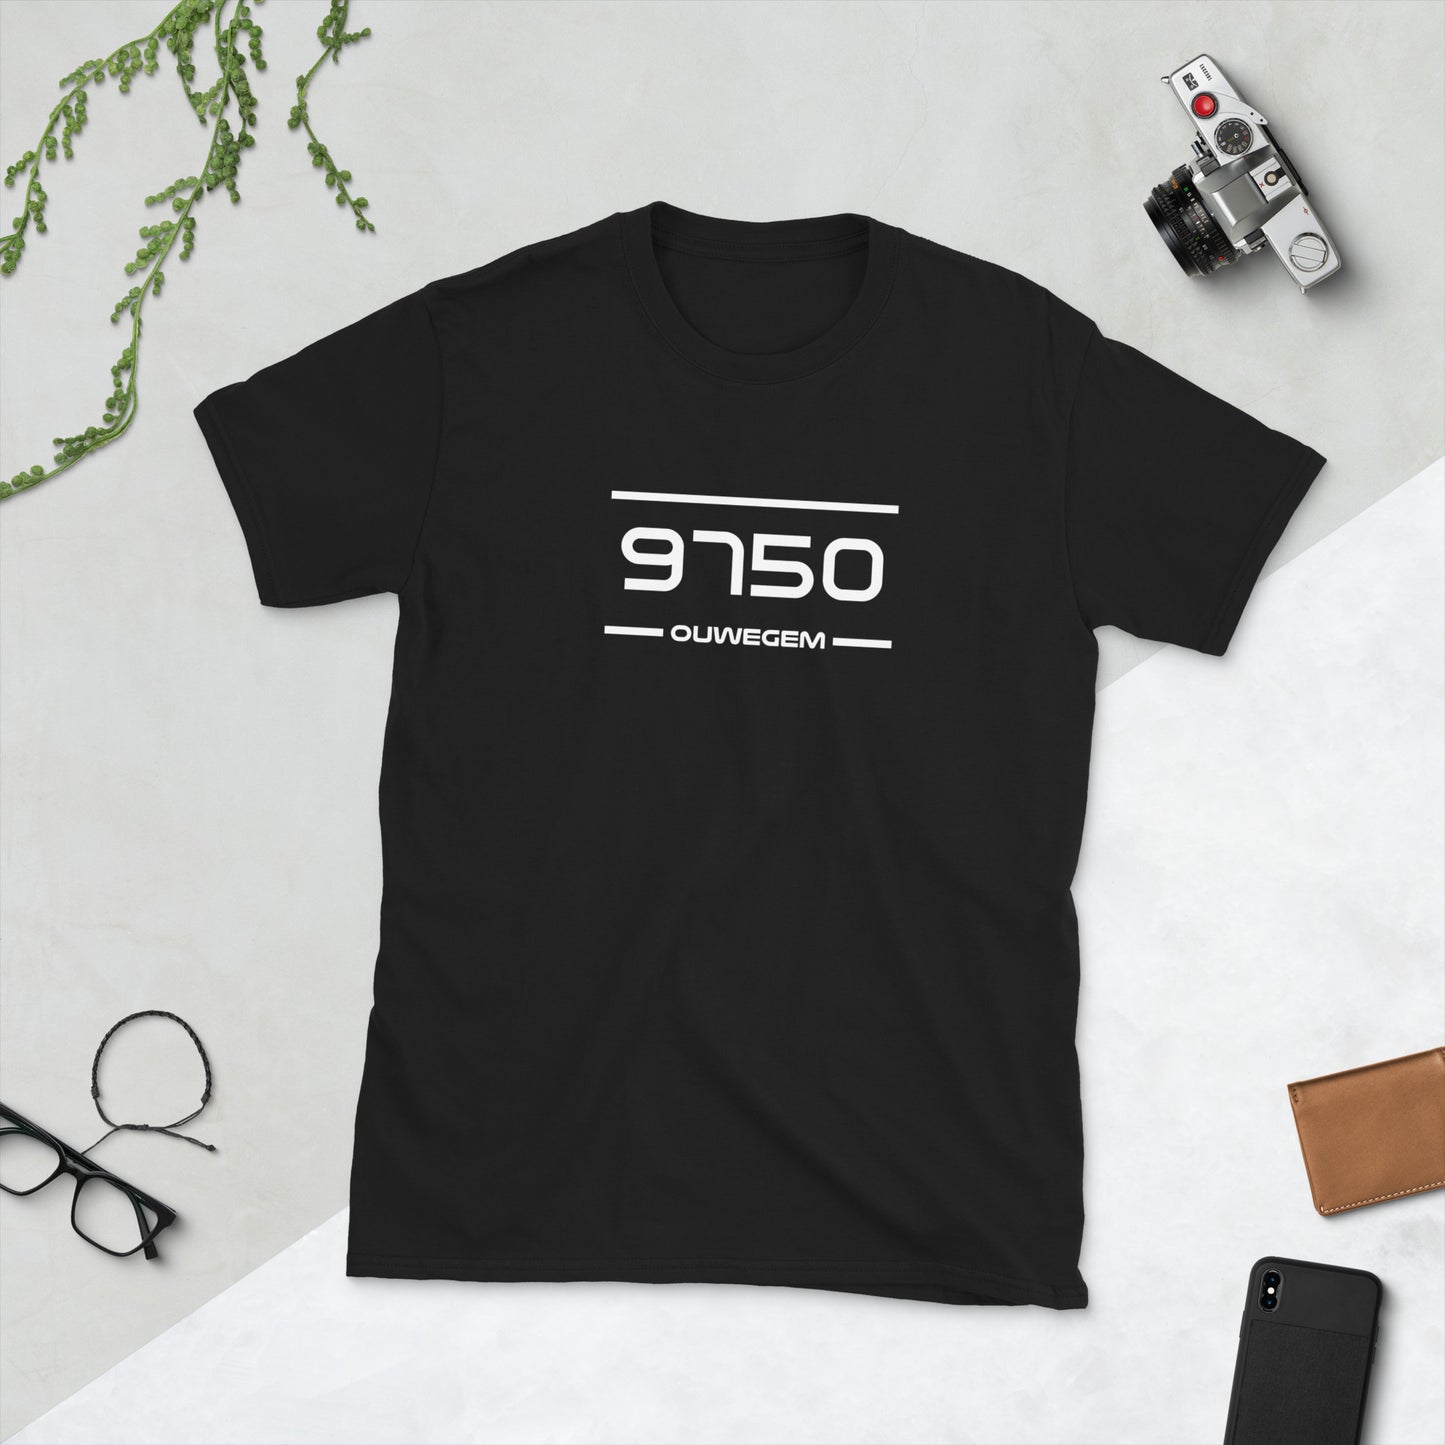 T-Shirt - 9750 - Ouwegem